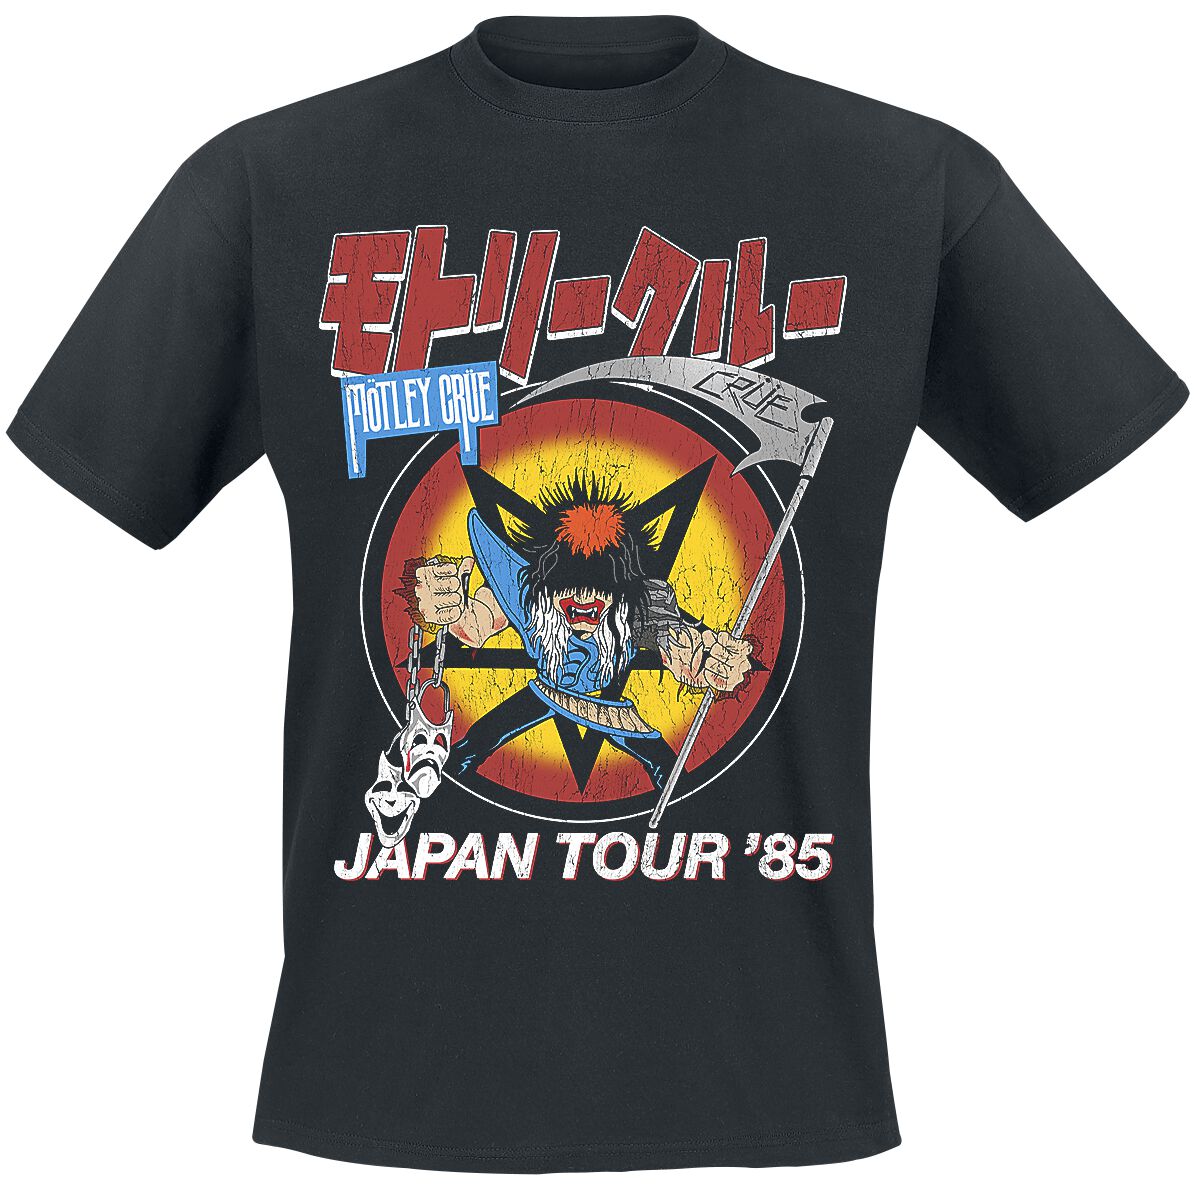 Mötley Crüe T-Shirt - Japan Tour - S bis 4XL - für Männer - Größe XL - schwarz  - Lizenziertes Merchandise!